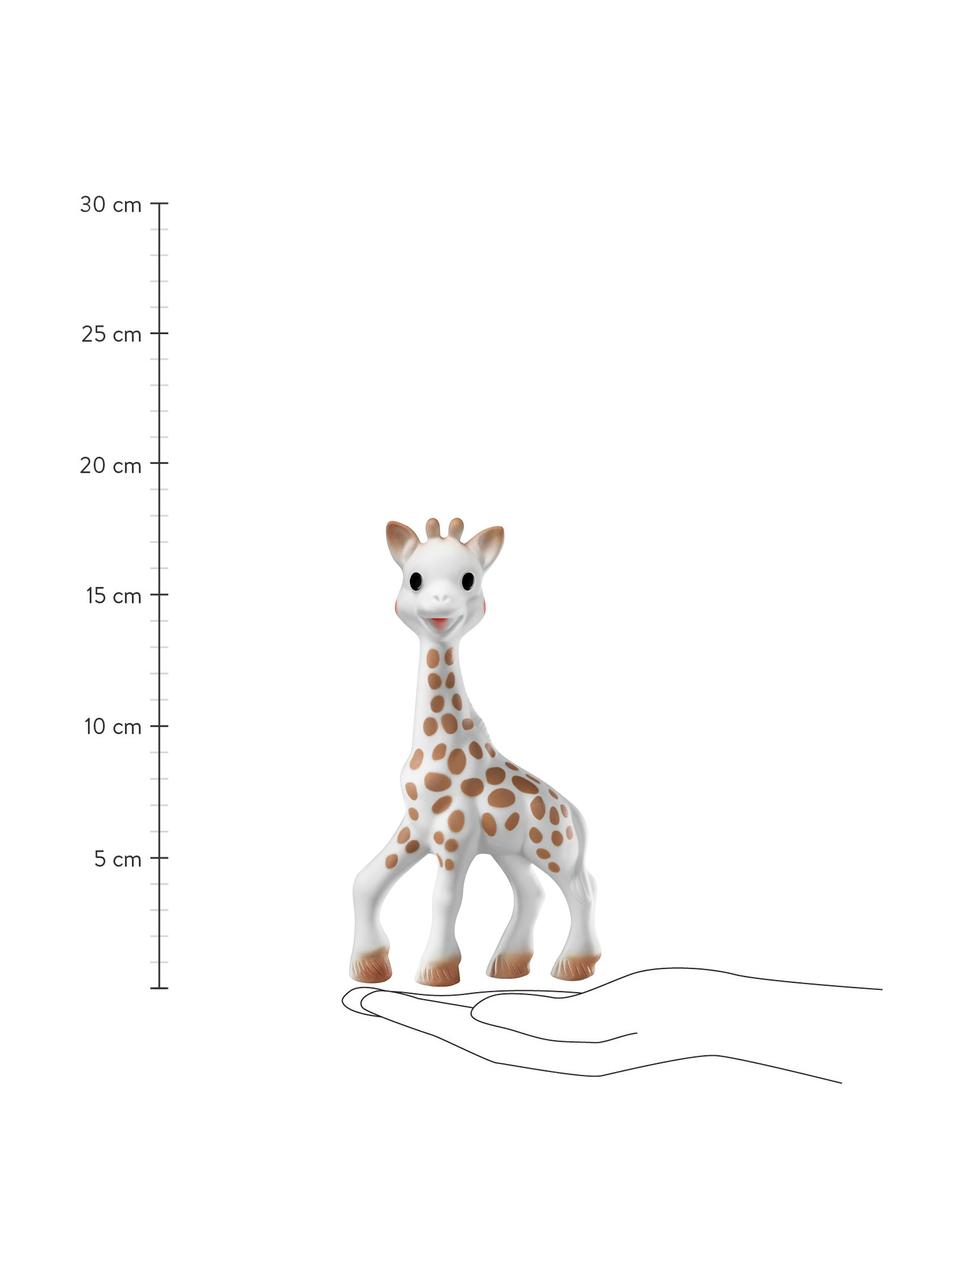 Sada hračky s klíčenkou Sophie la girafe, 2 díly, 100 % přírodní kaučuk, Bílá, hnědá, Sada s různými velikostmi